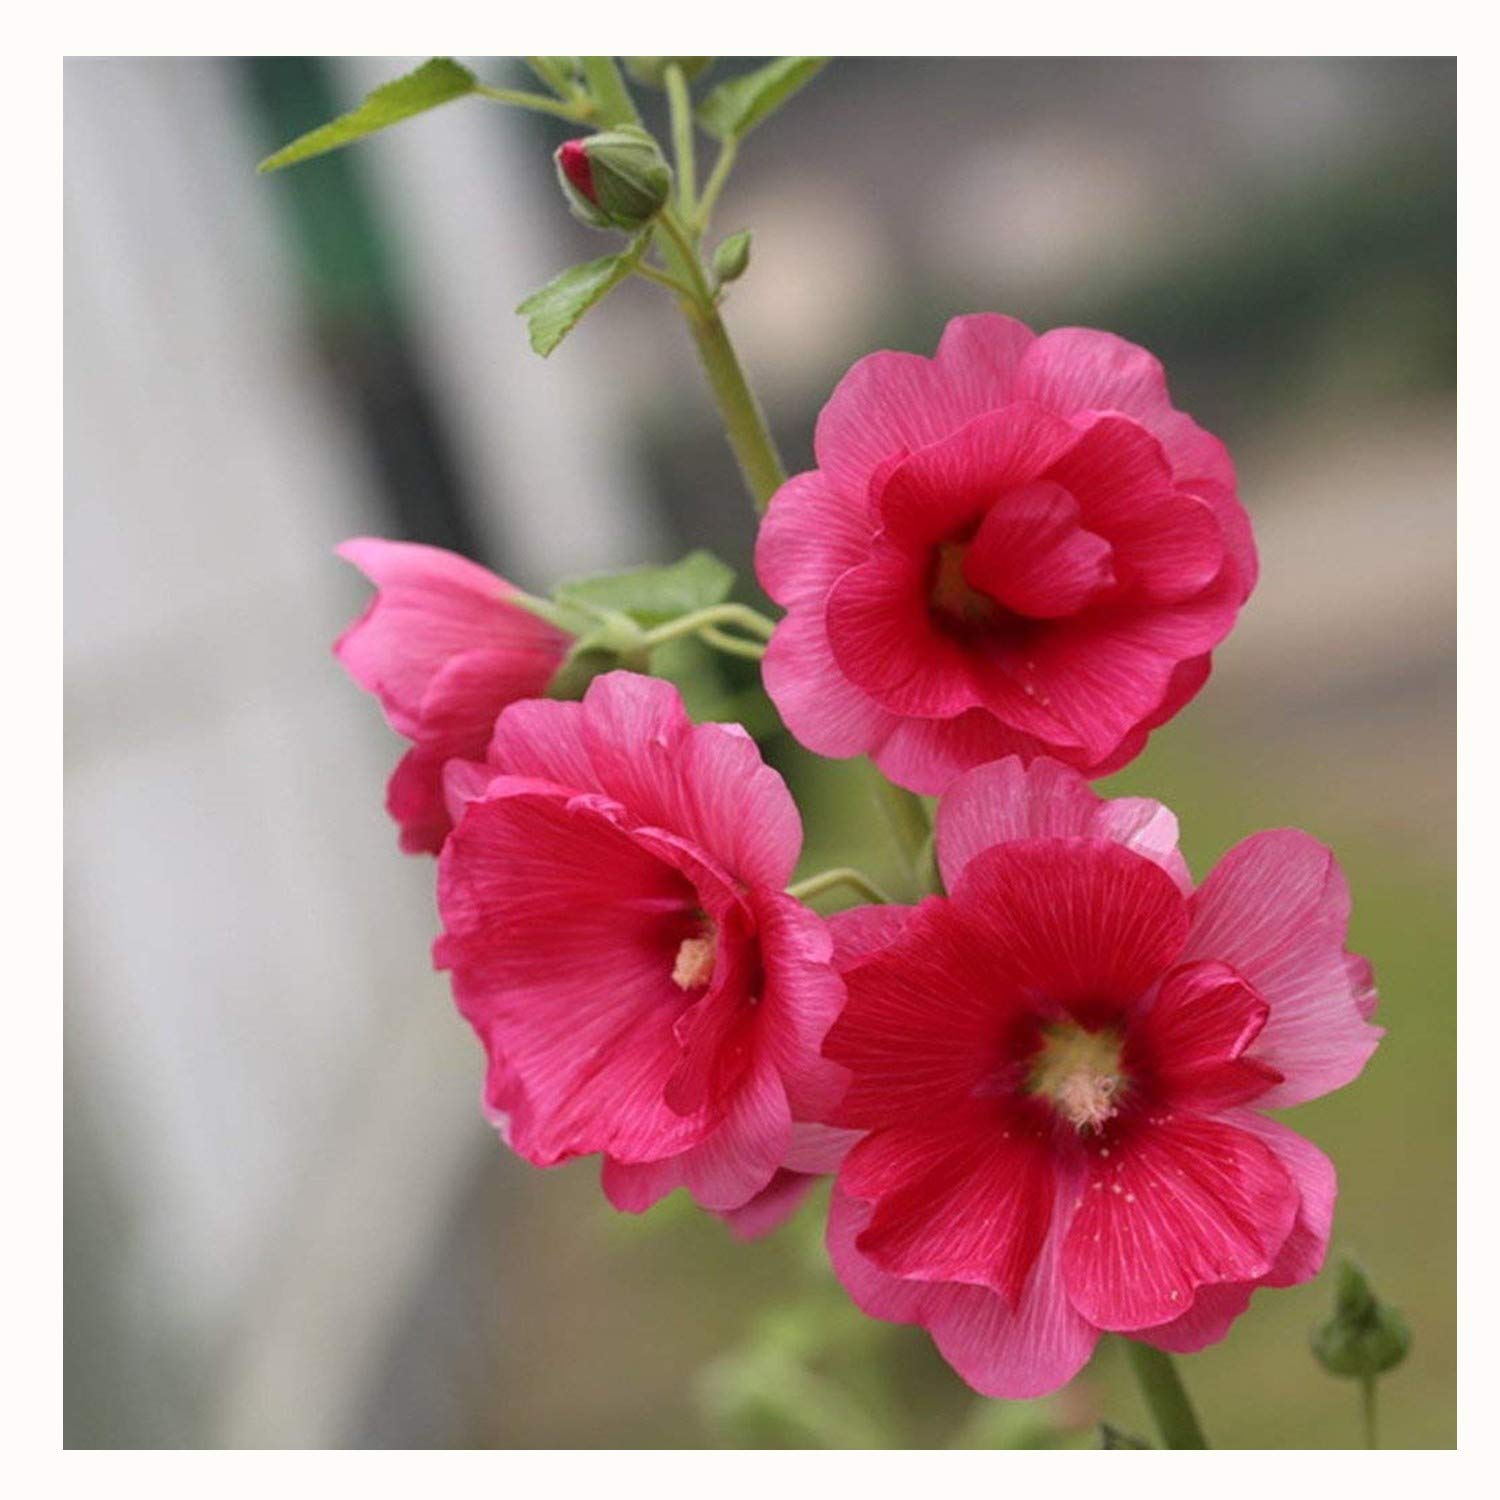 Bông hoa mãn đình hồng màu hồng đậm rất đẹp